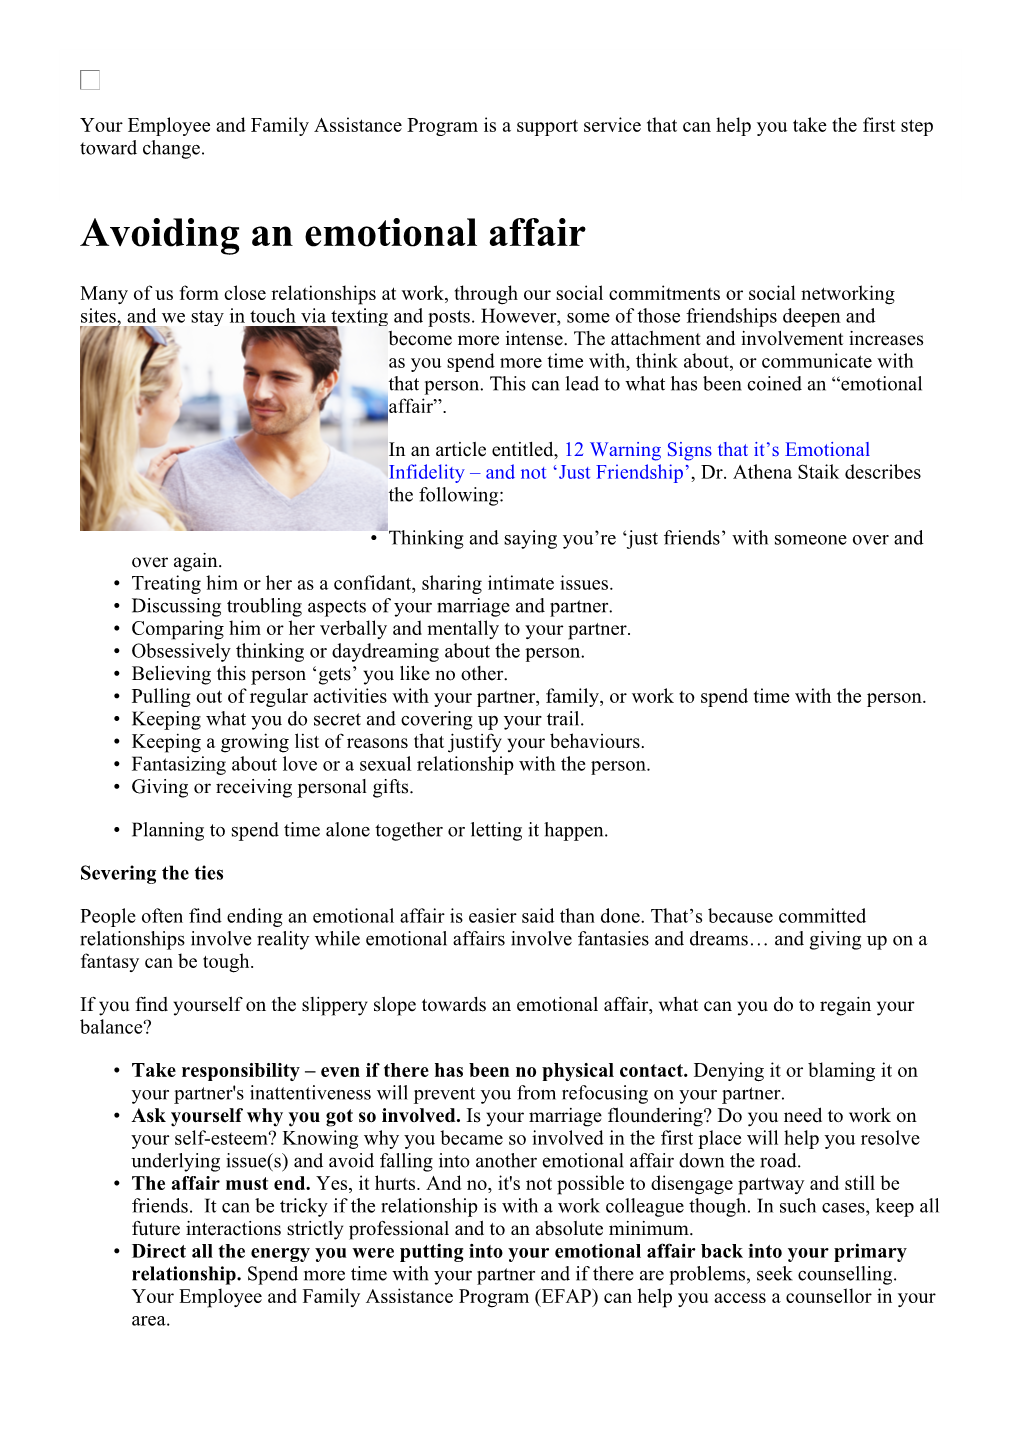 Avoiding an Emotional Affair